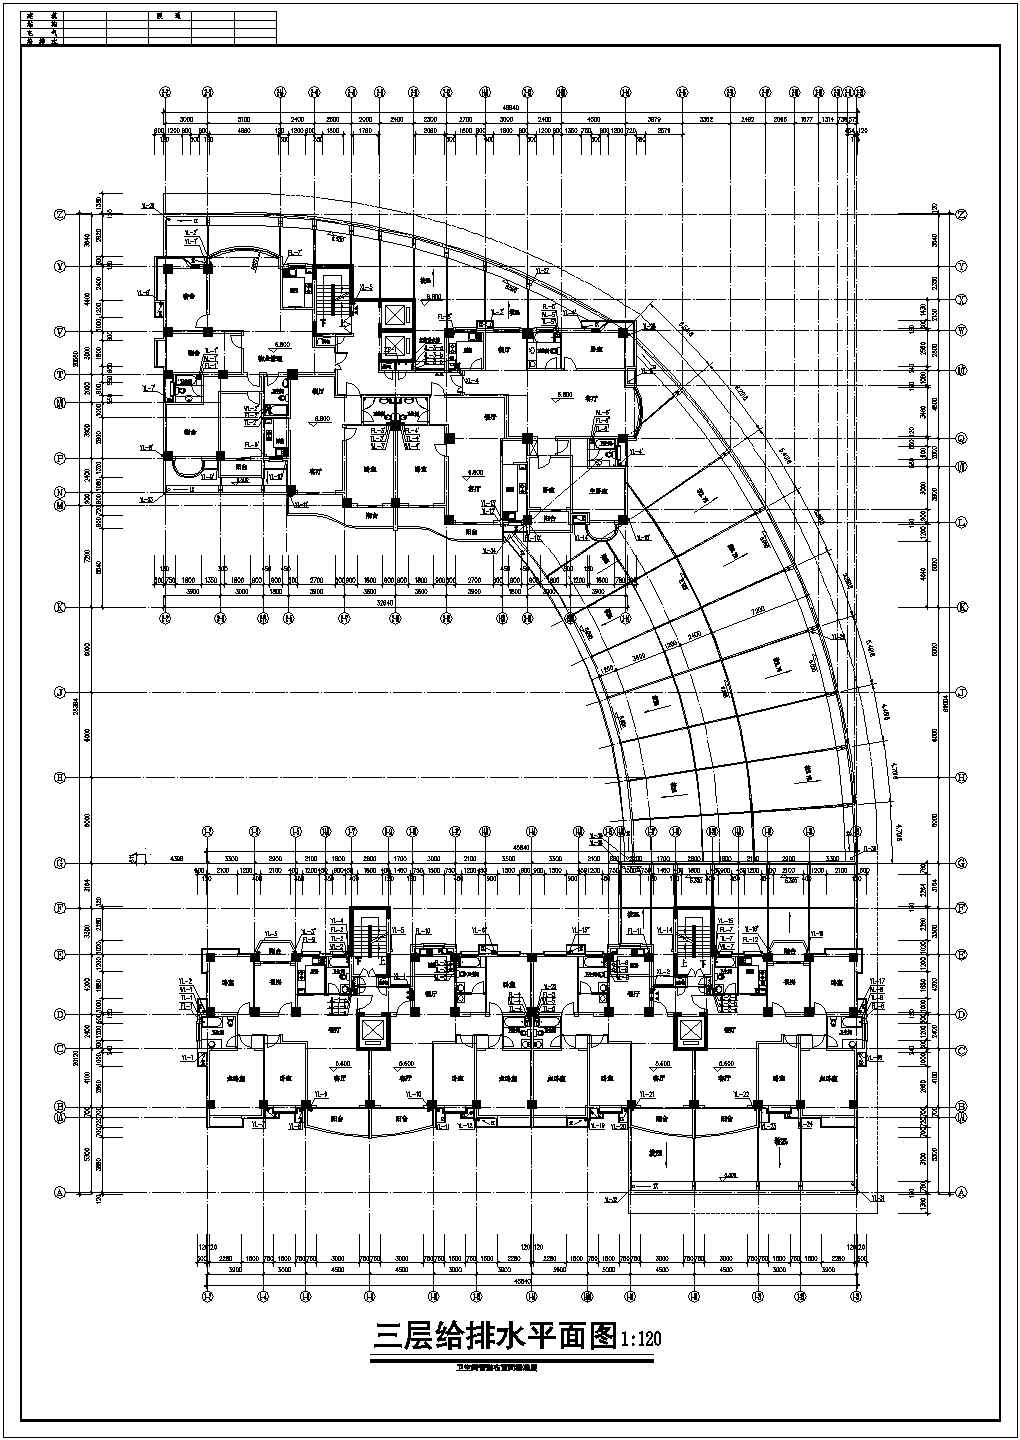 经典高层单元式小区给排水系统CAD施工图